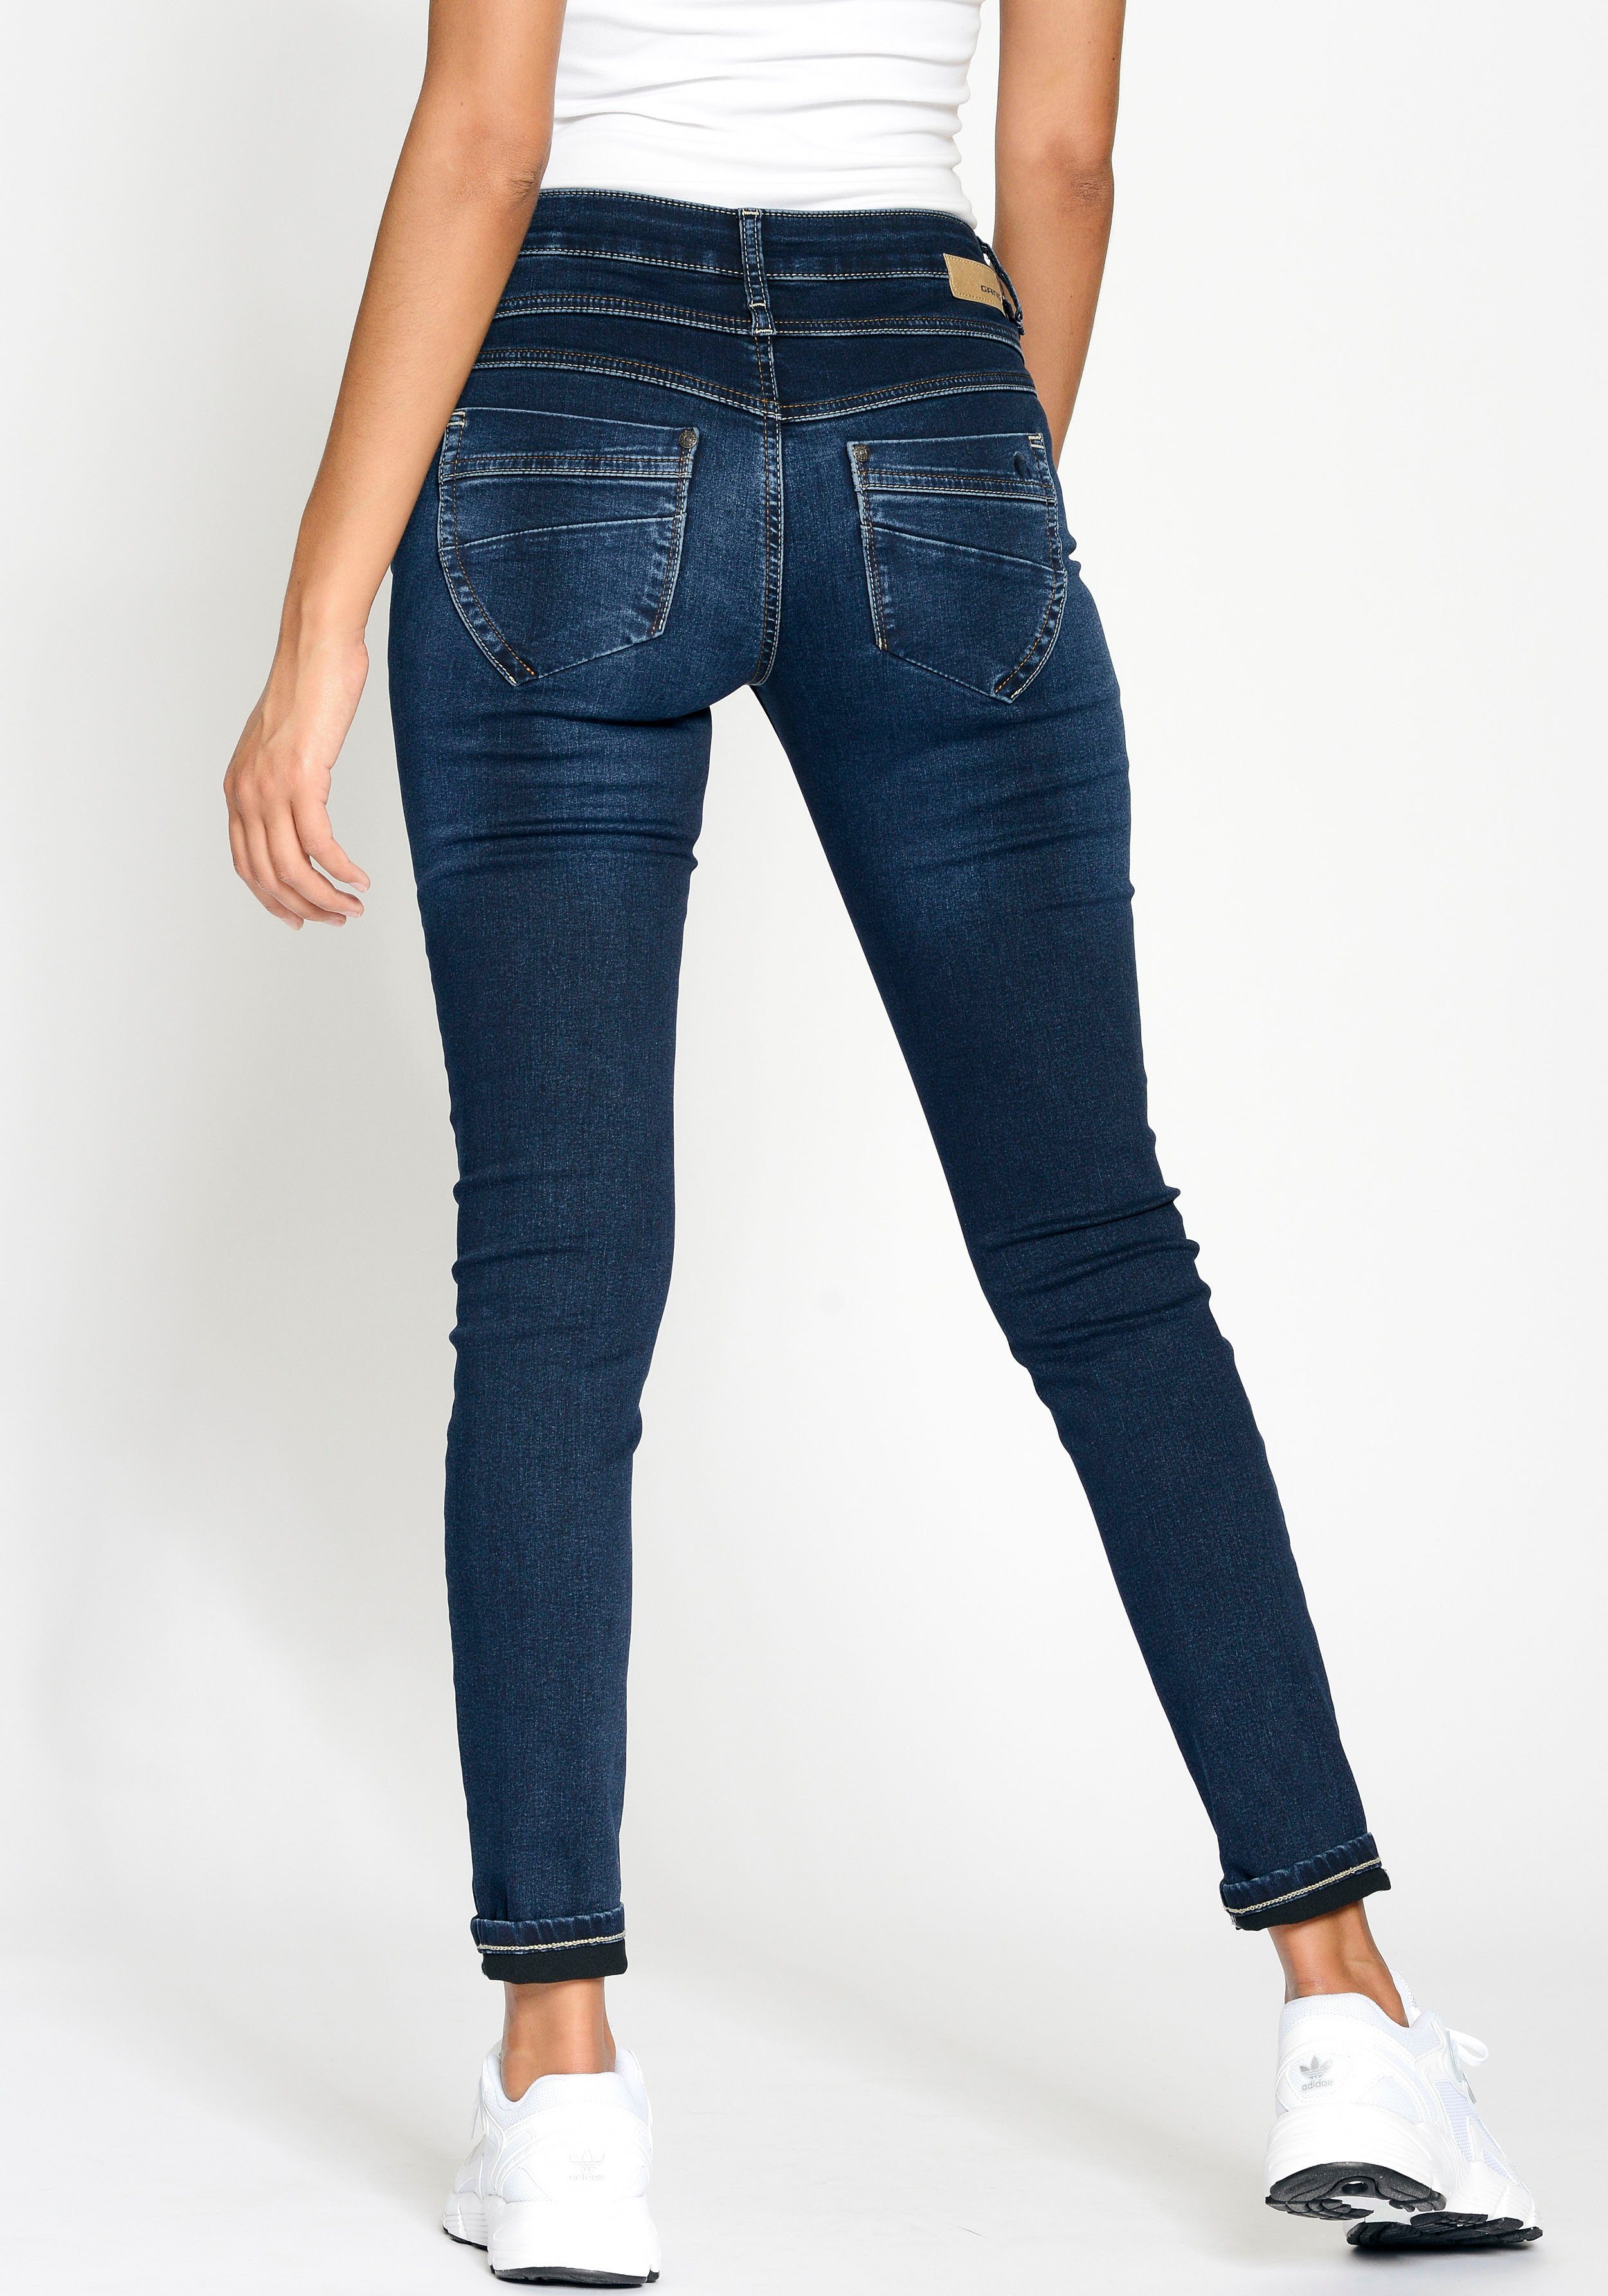 deep dark 94MORA Skinny-fit-Jeans vorne Passe GANG blue mit 3-Knopf-Verschluss und